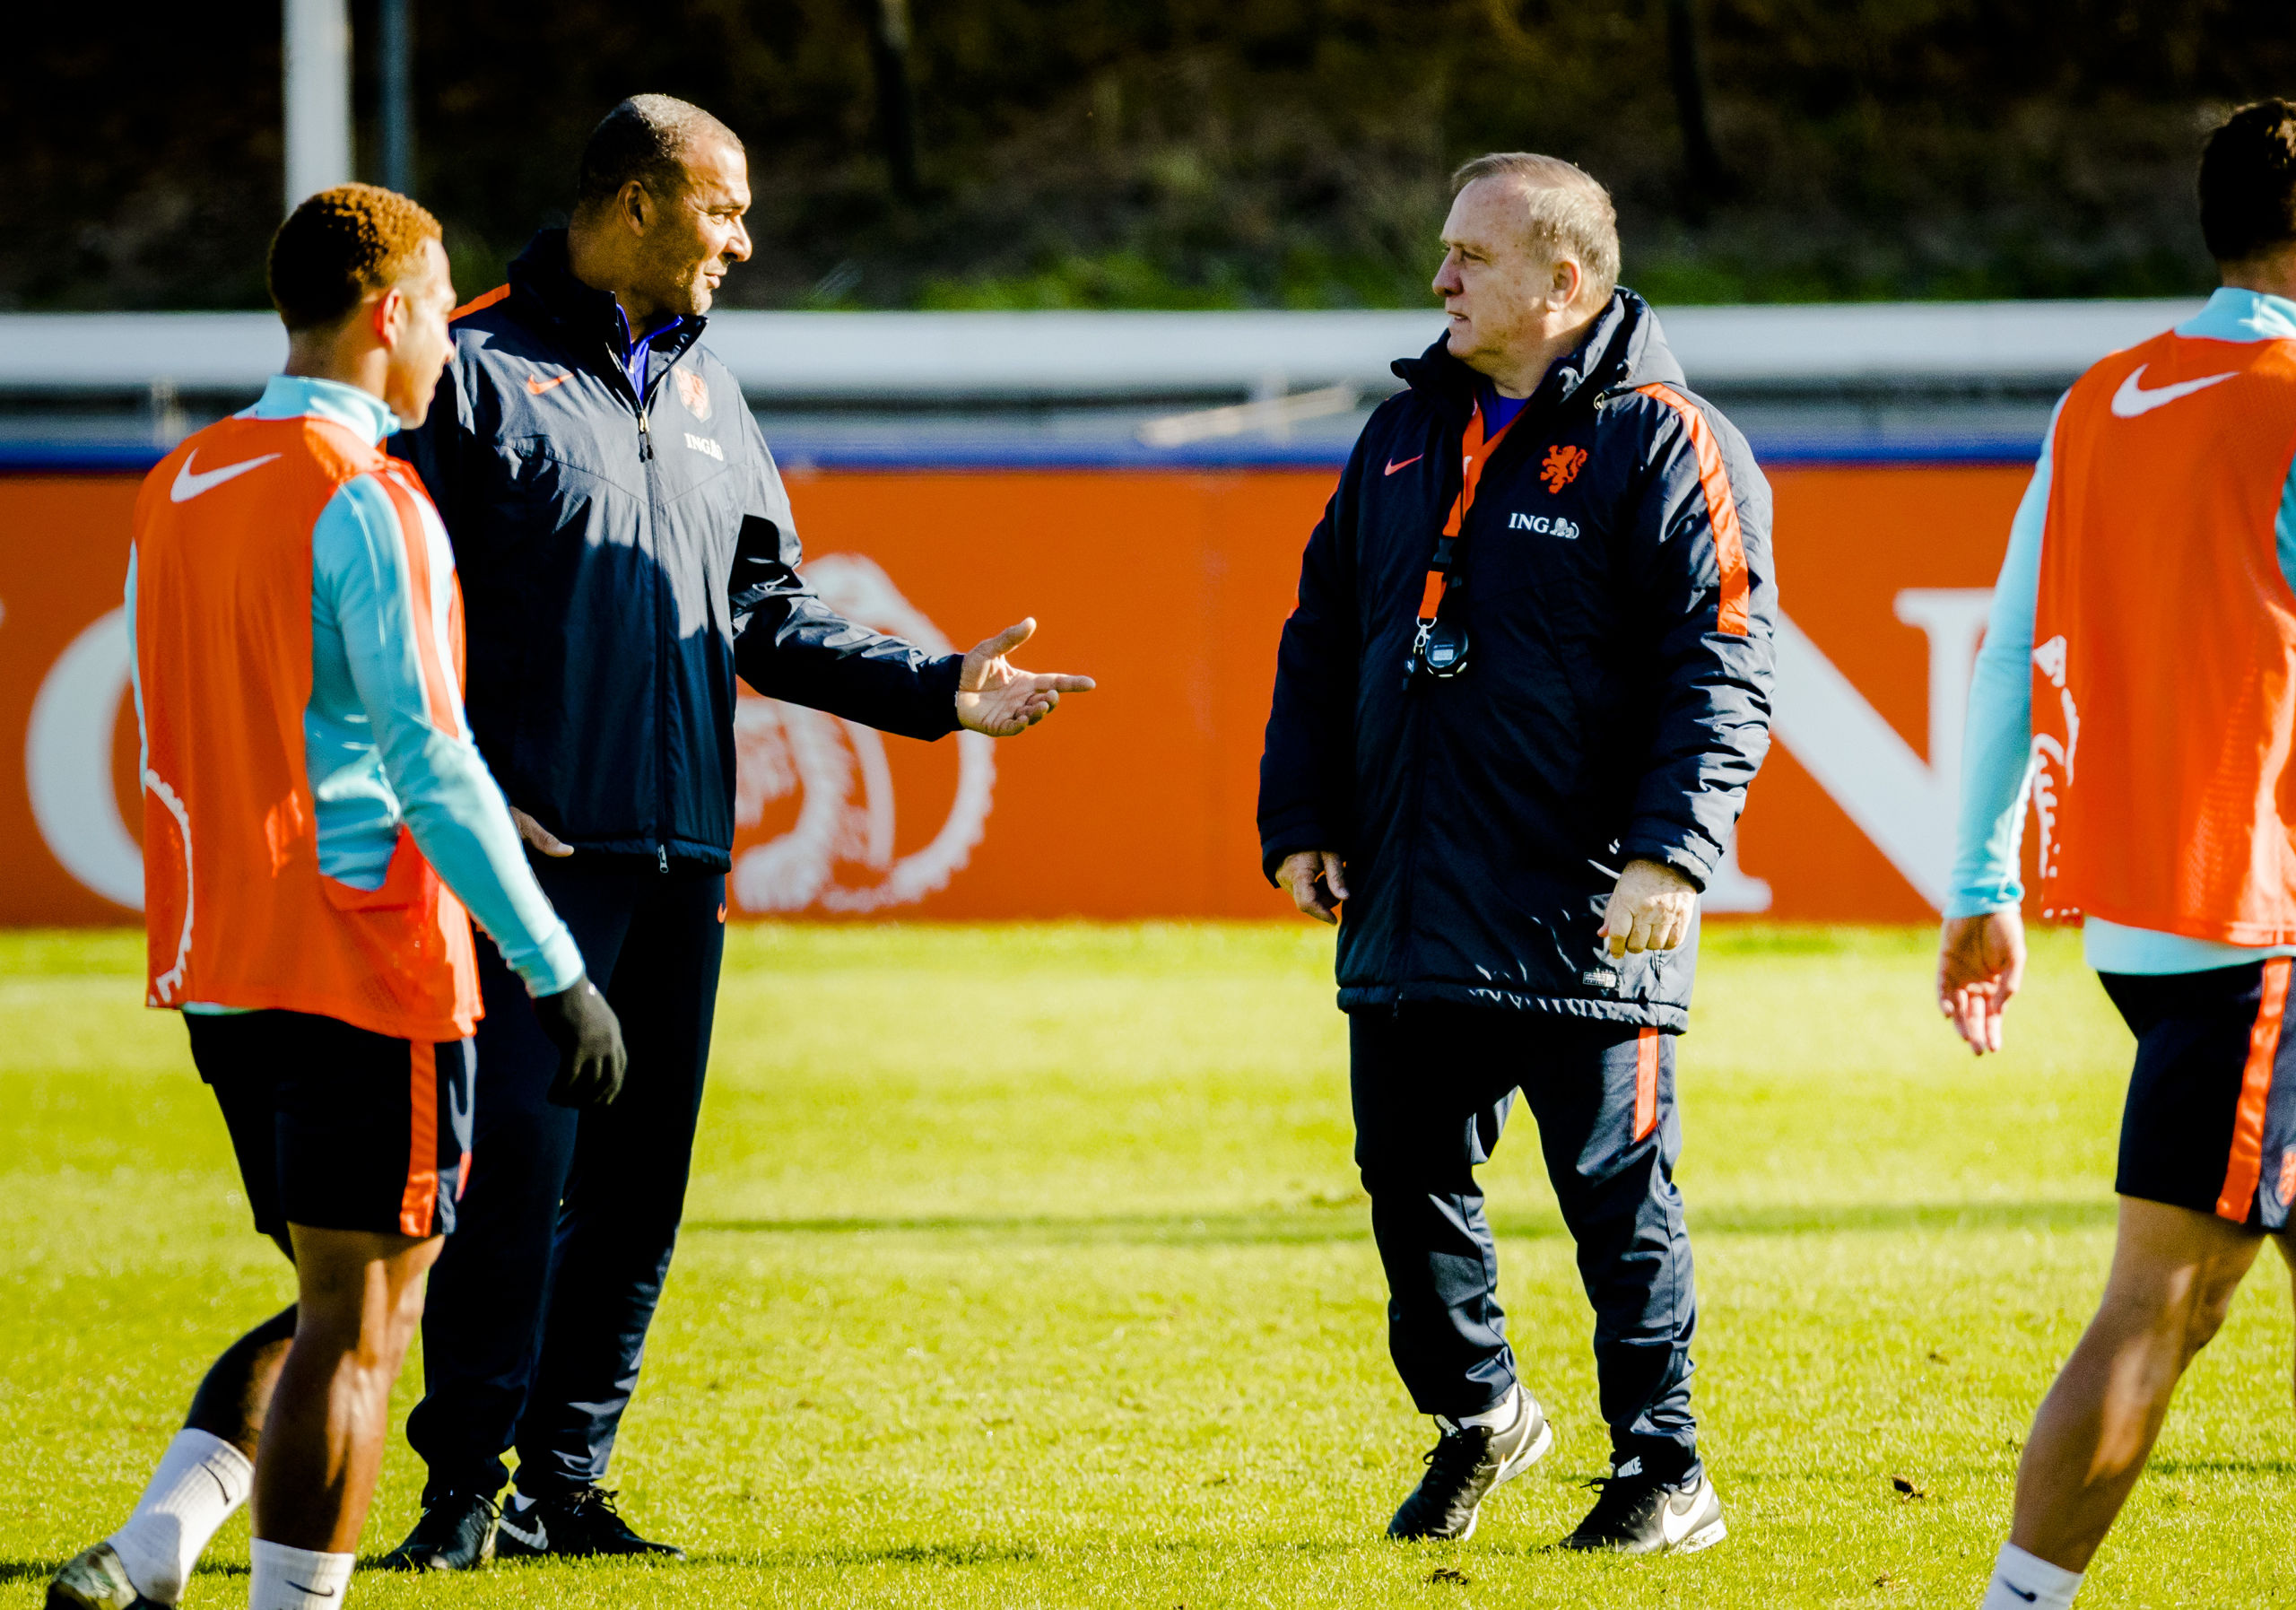 2017-11-07 13:29:15 KATWIJK - Ruud Gullit en Dick Advocaat van het Nederlands elftal tijdens een training op het terrein van Quick Boys. Oranje oefent later deze week in Aberdeen tegen Schotland. ANP REMKO DE WAAL